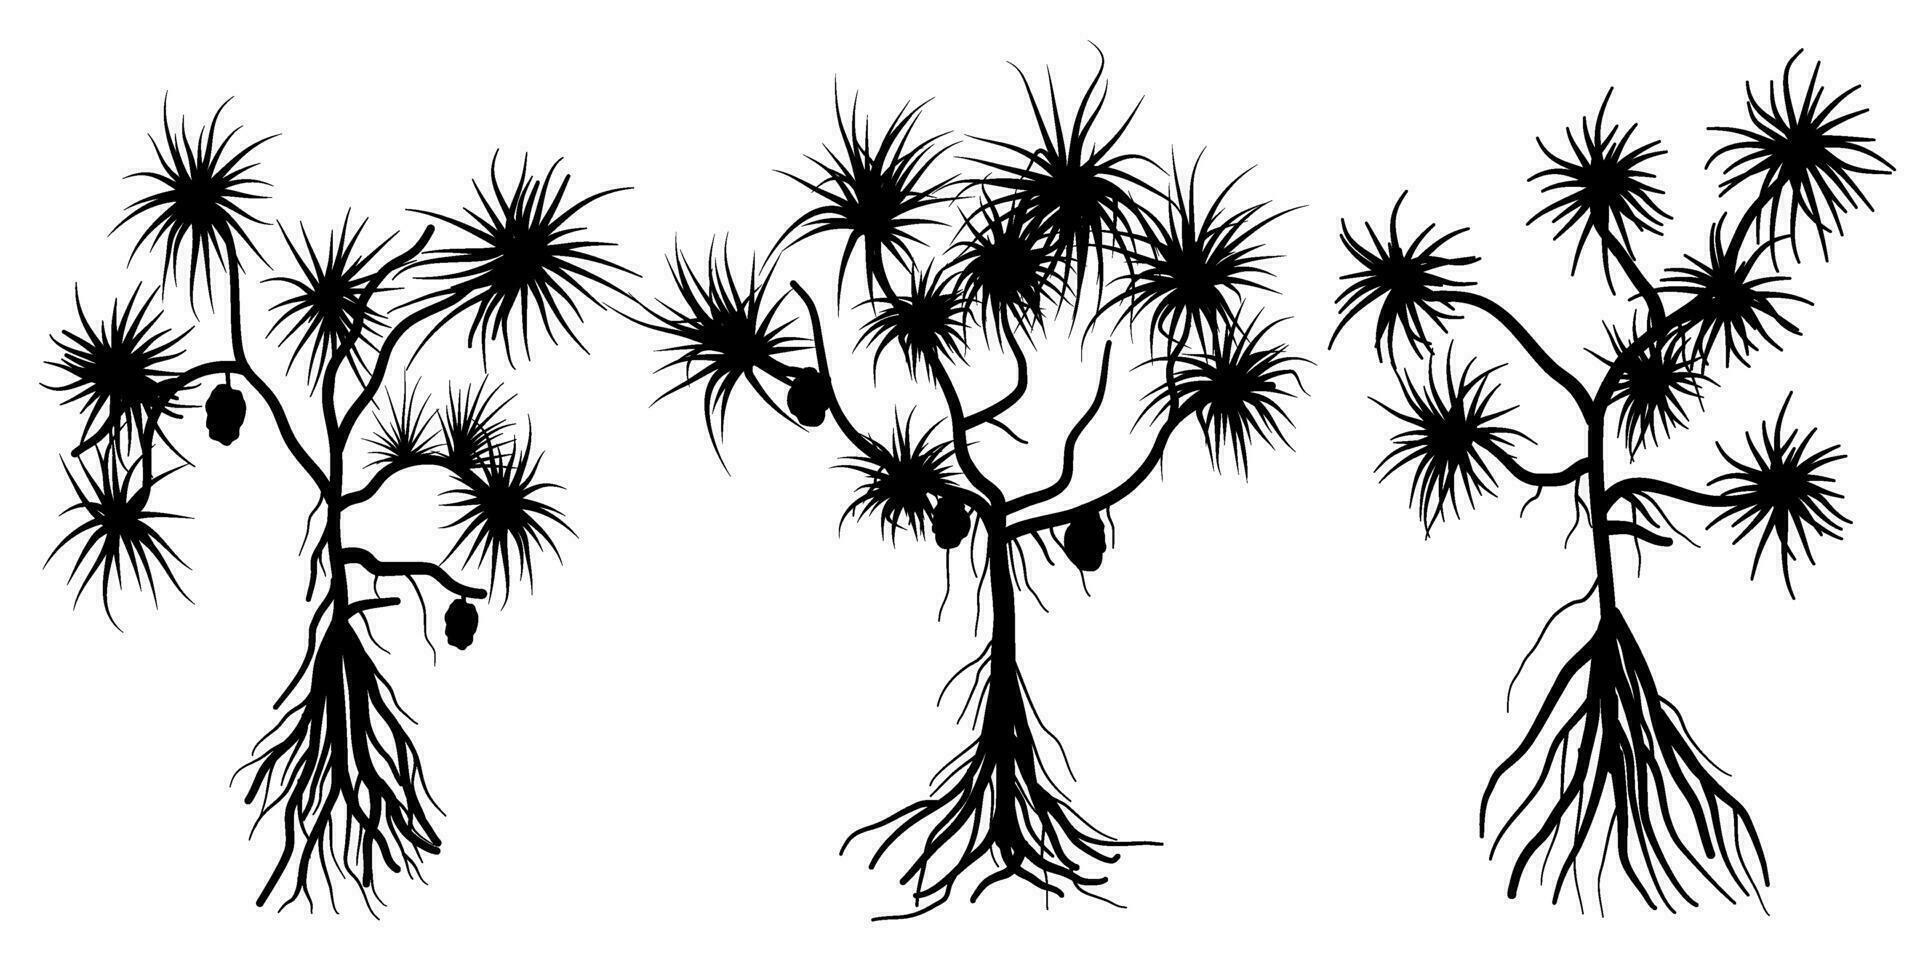 Pandanus tectorius comunemente chiamato vite pino, tropicale albero silhouette vettore